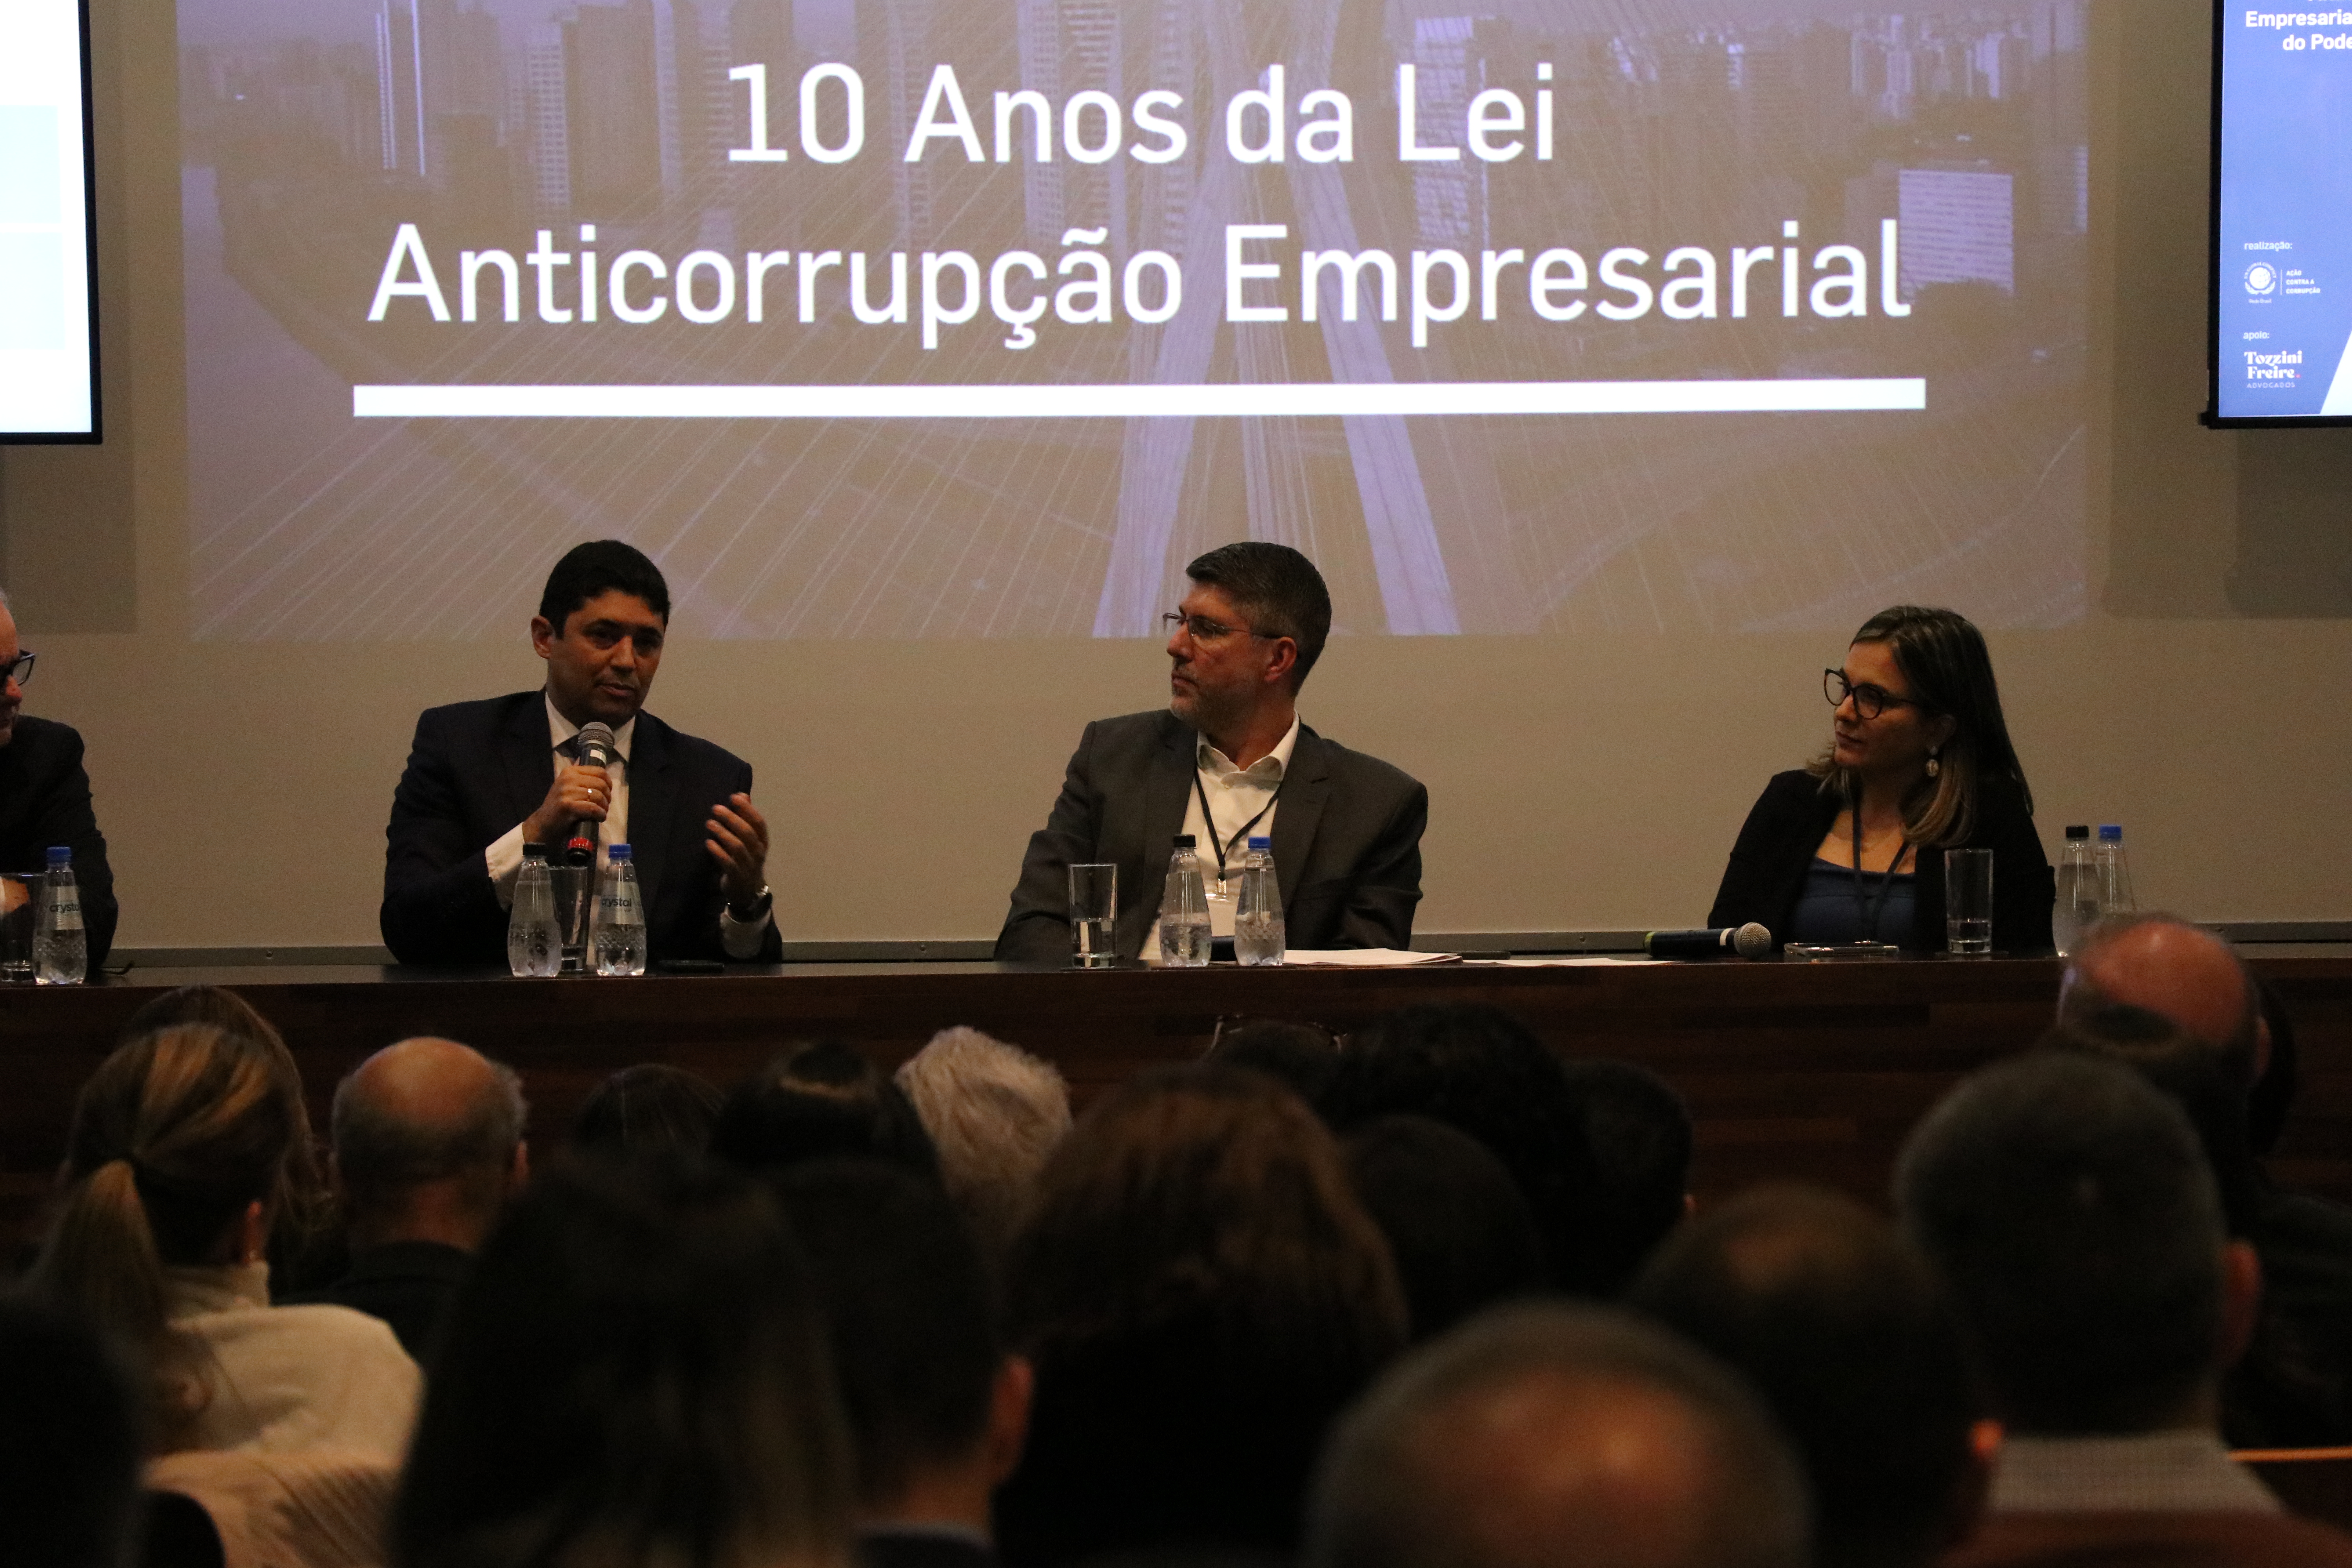 10 Anos da Lei Anticorrupção Empresarial